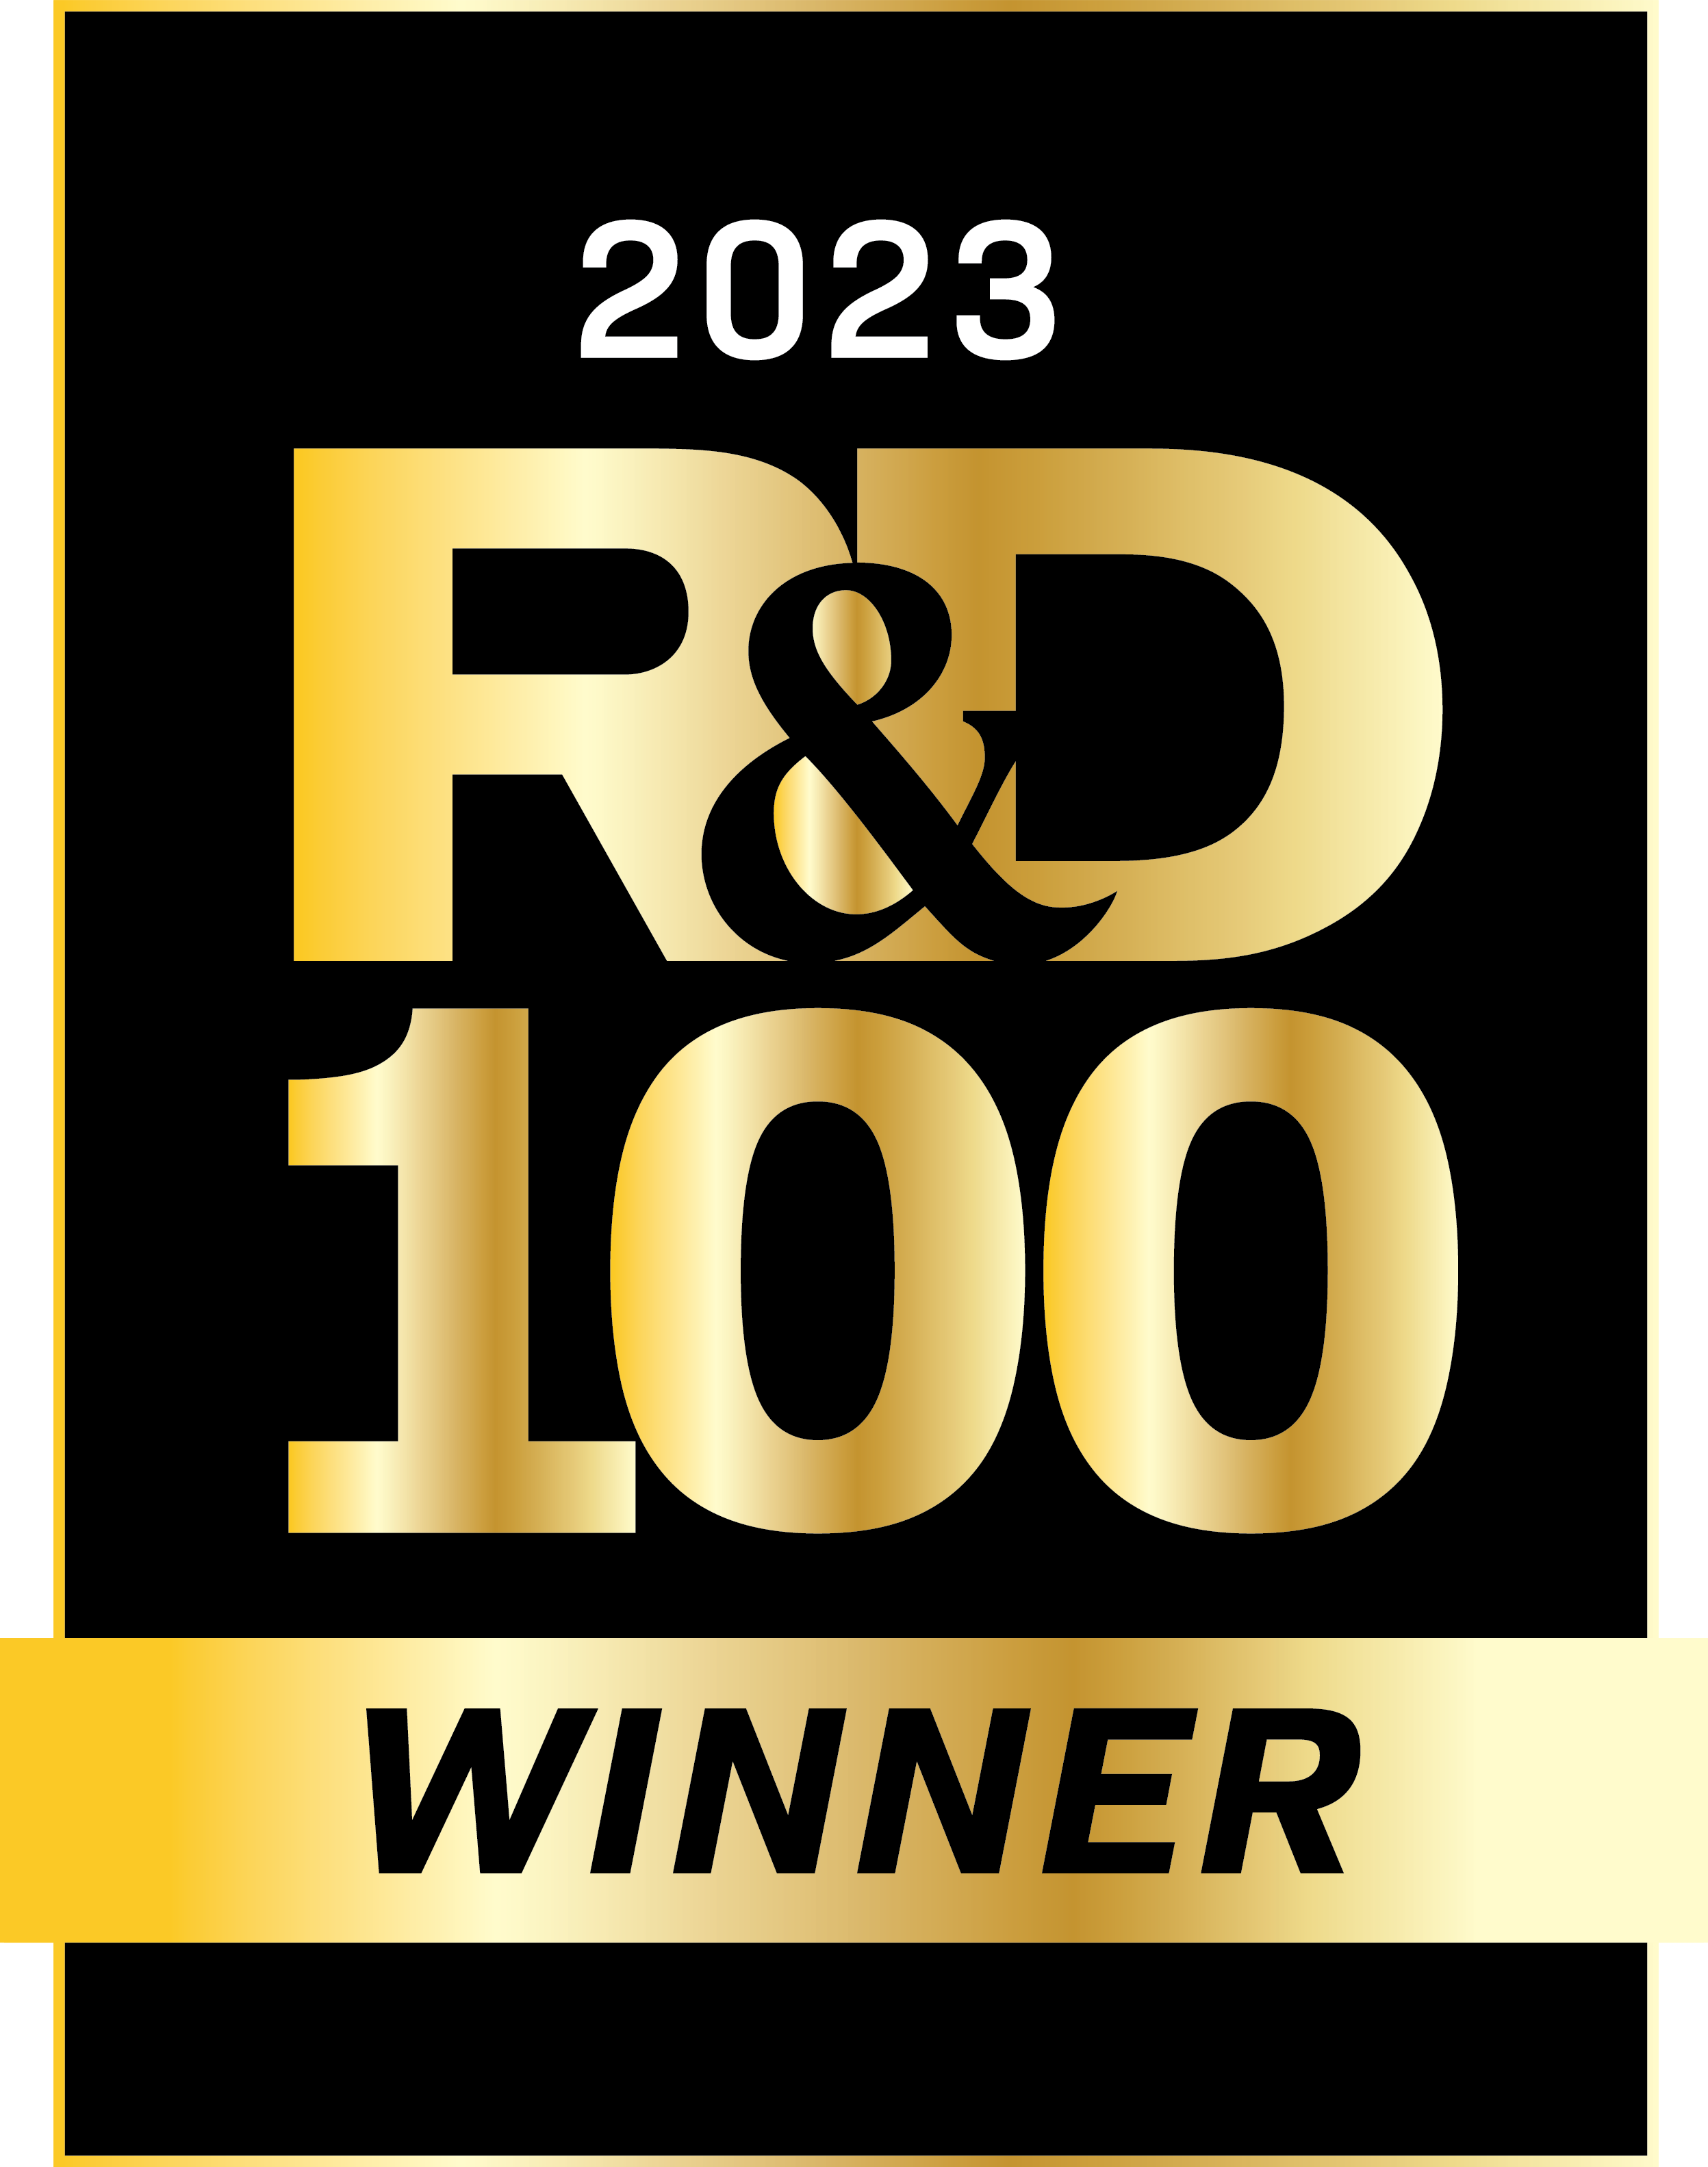 2023 RD 100 logo image for Revio award